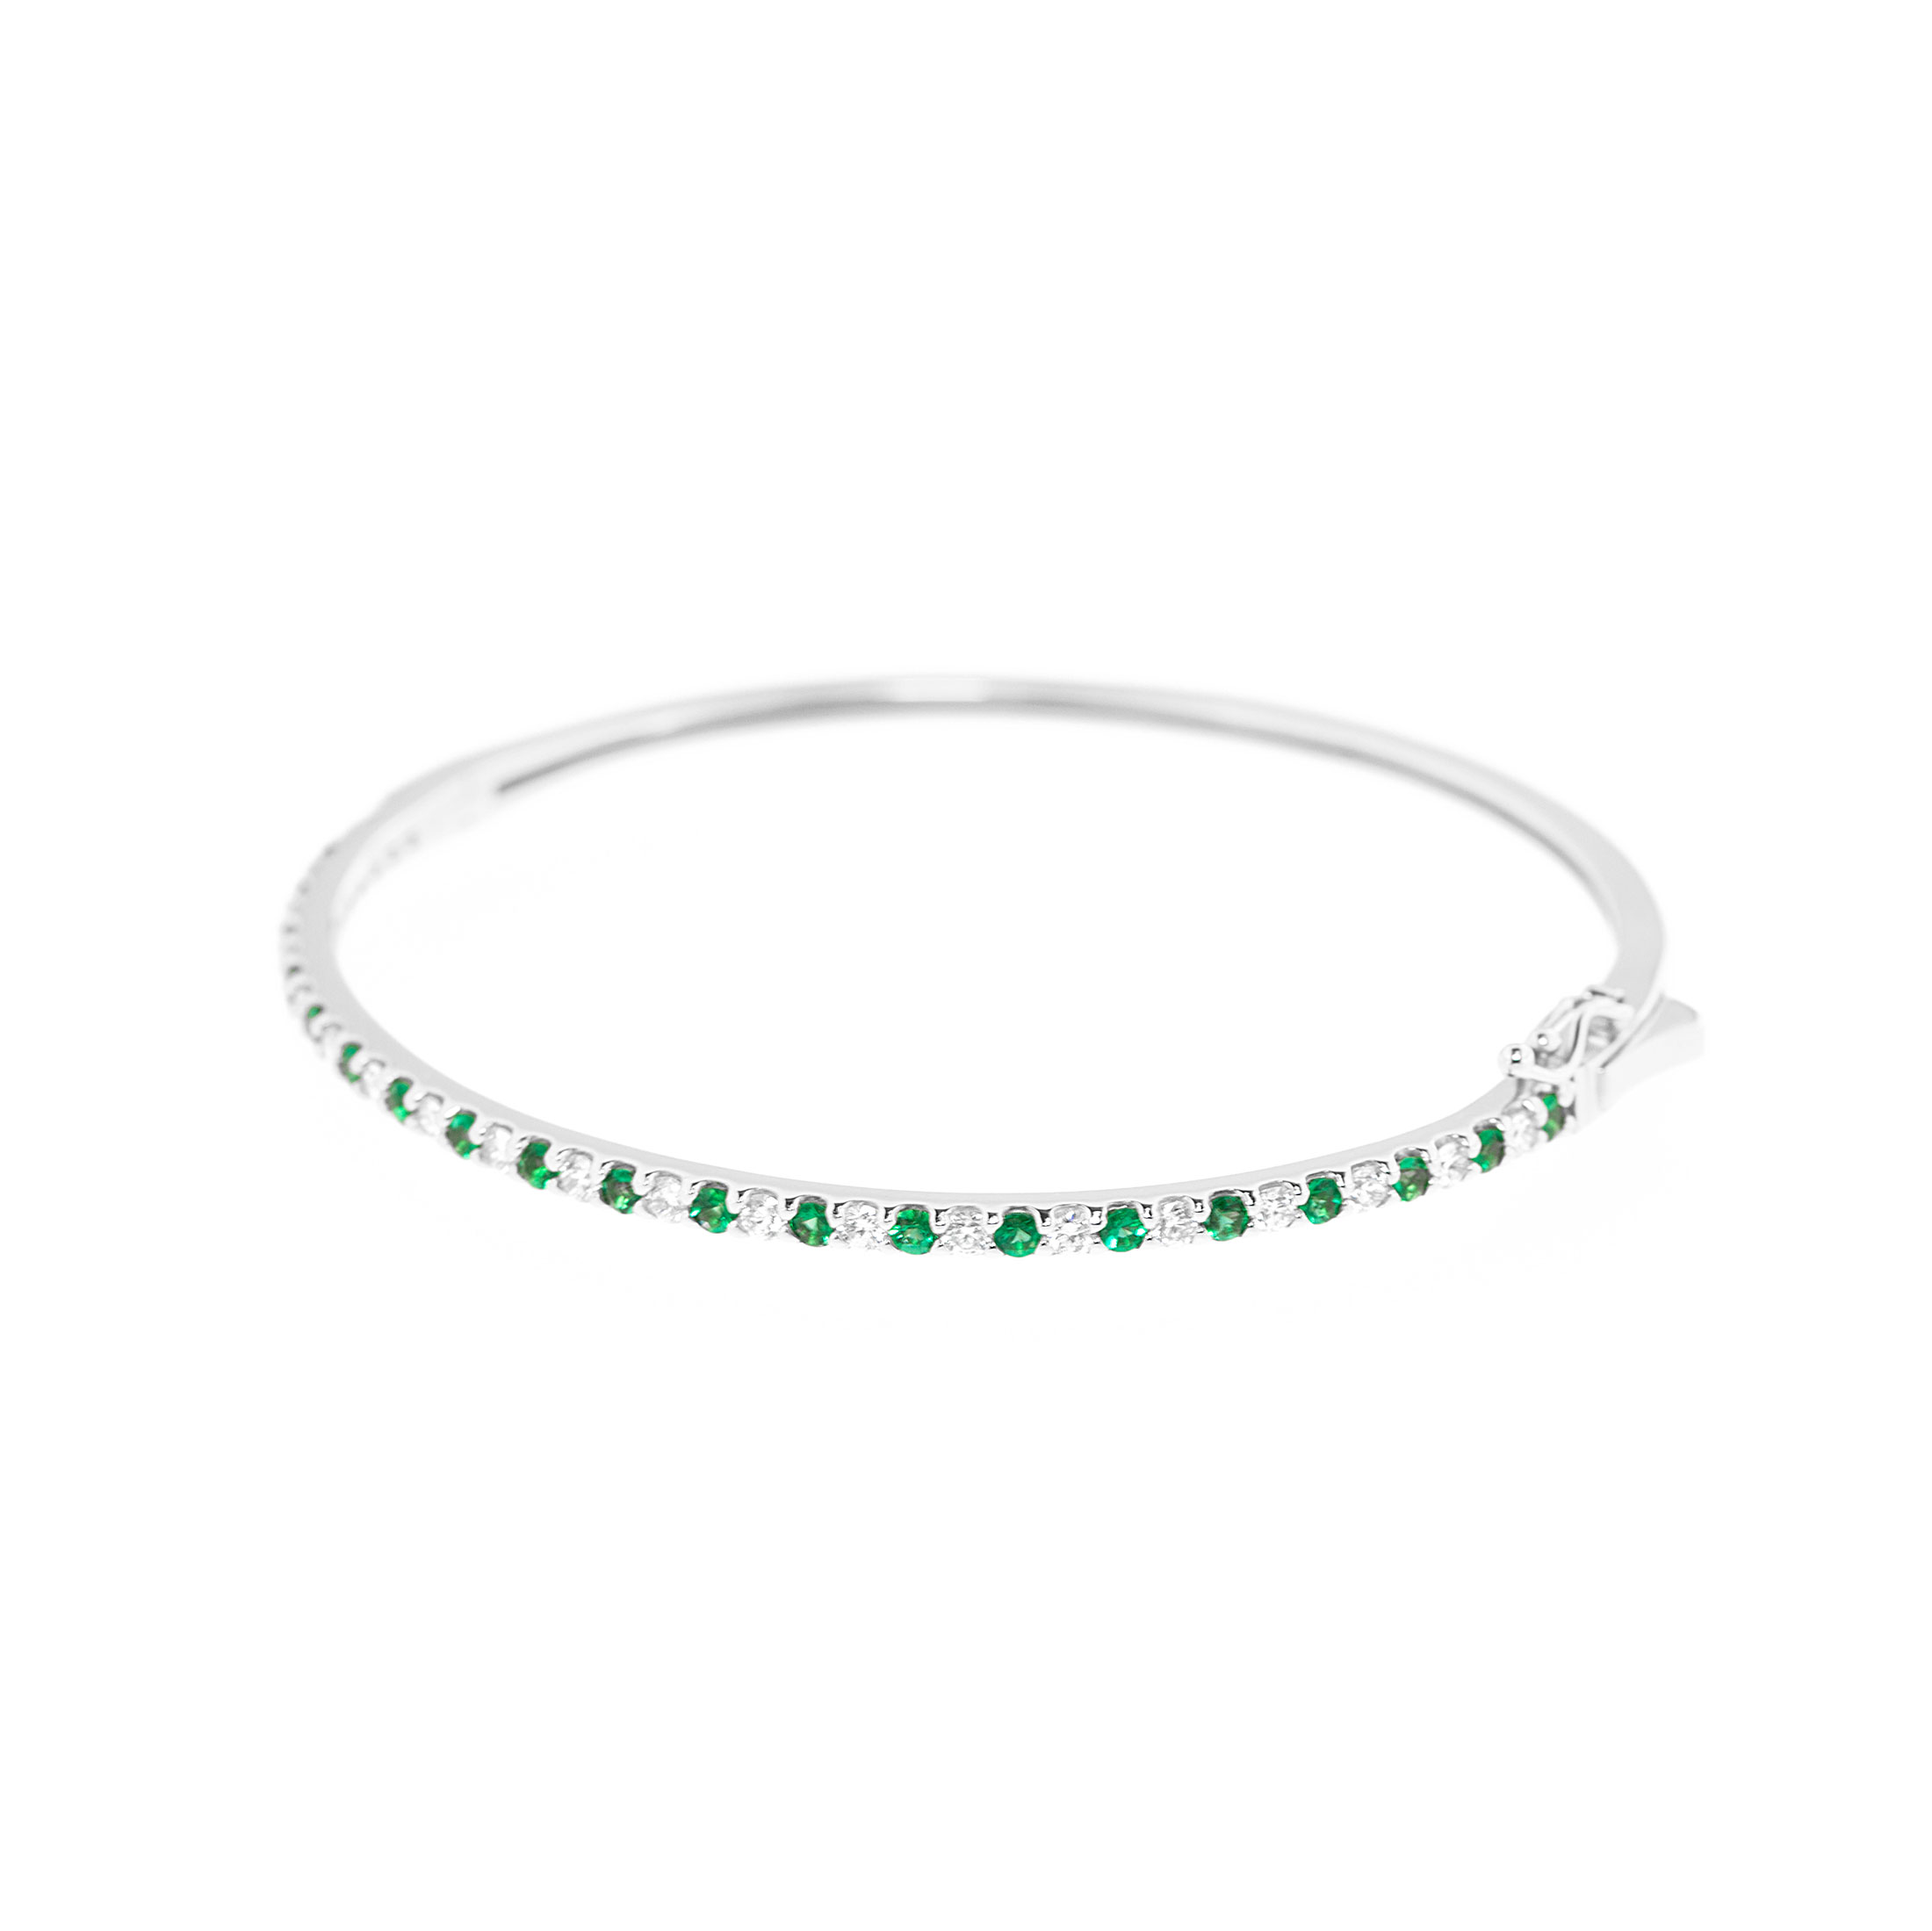 18kt White Gold Diamond and Emerald Bracelet - Color Stone Bracelet -  Bracelets - Fashion Jewelry